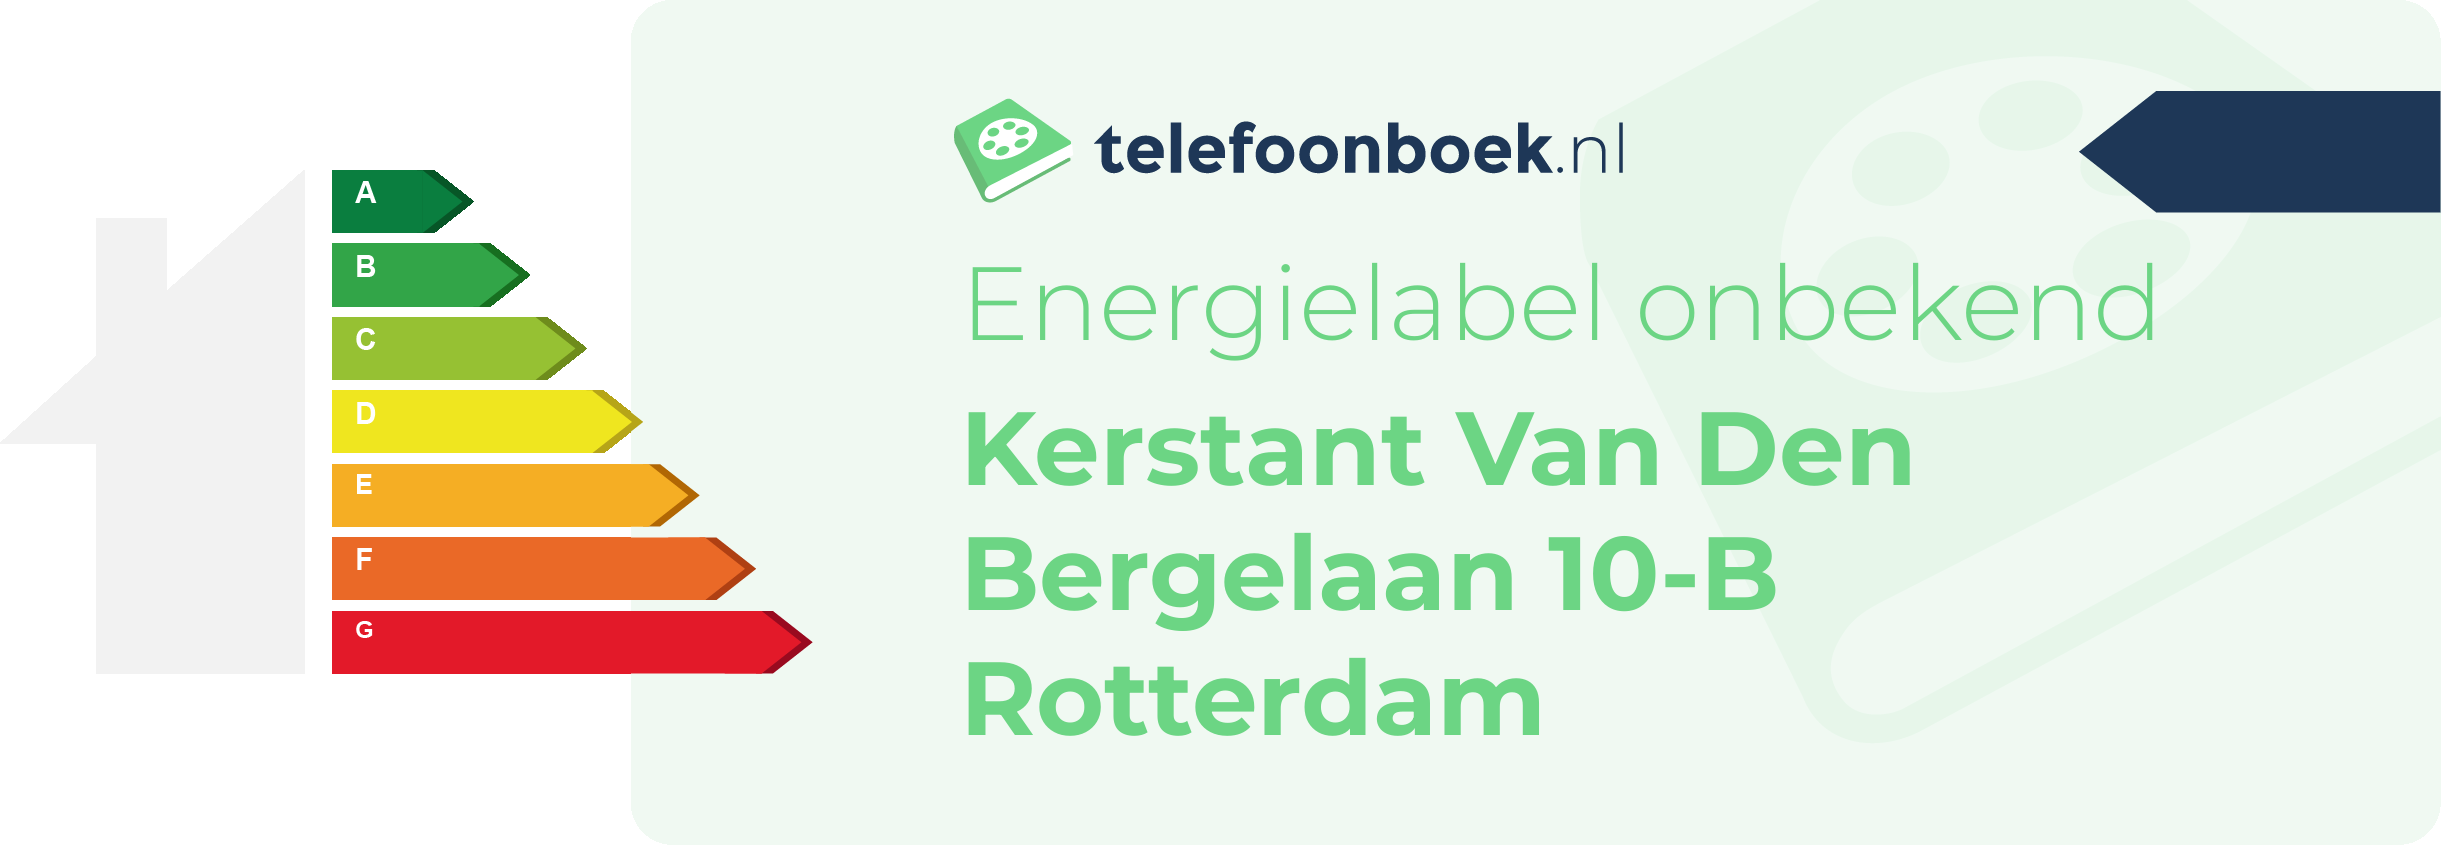 Energielabel Kerstant Van Den Bergelaan 10-B Rotterdam